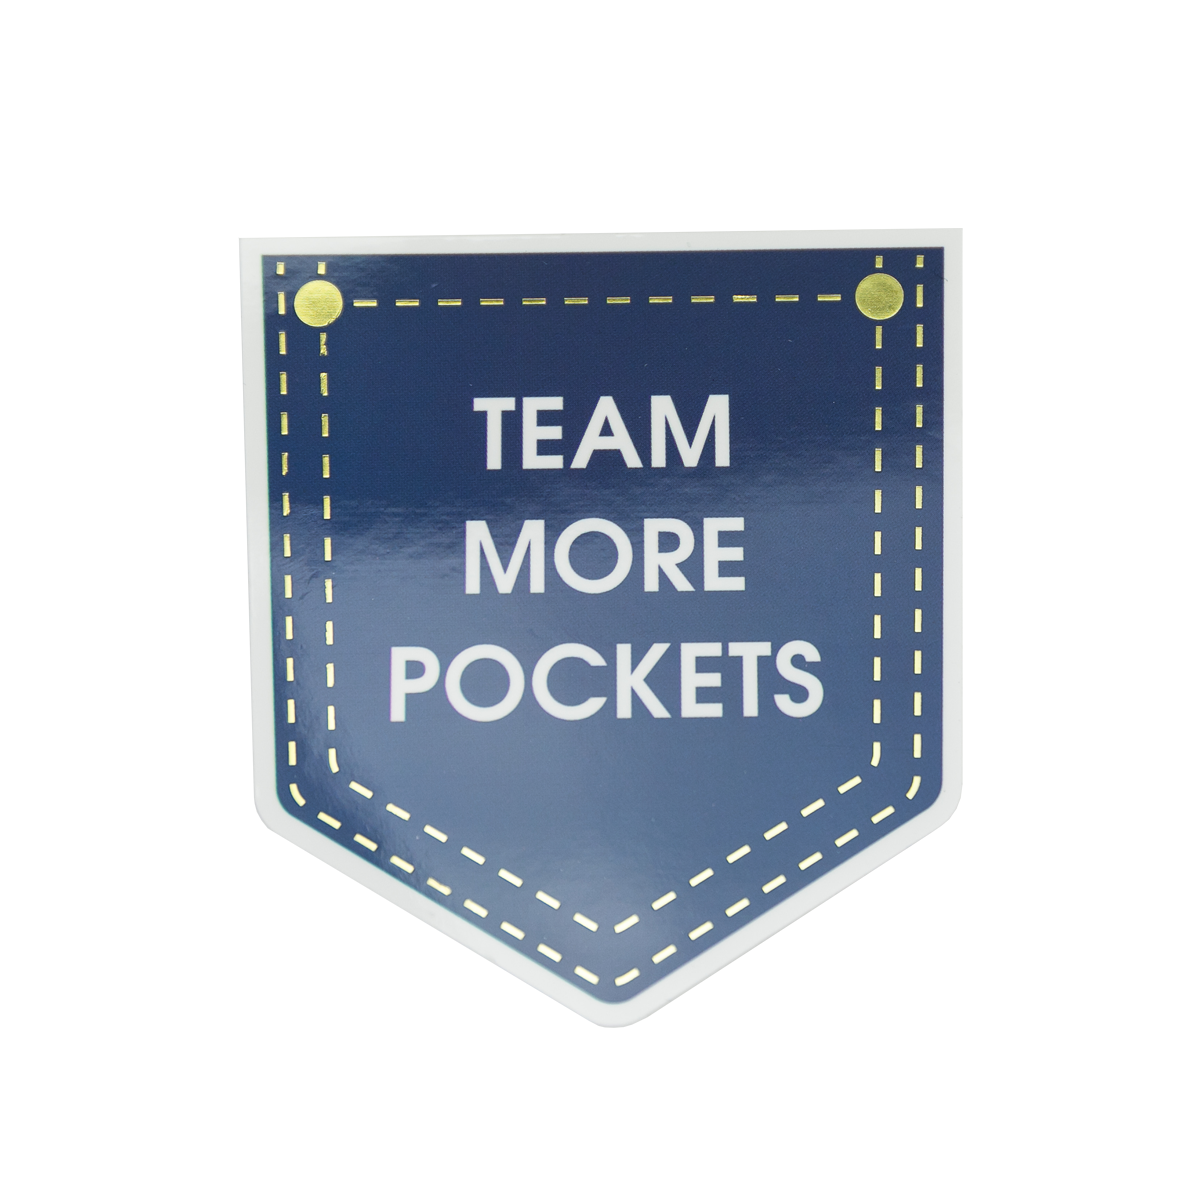 Team More Pockets - Vinyl Sticker